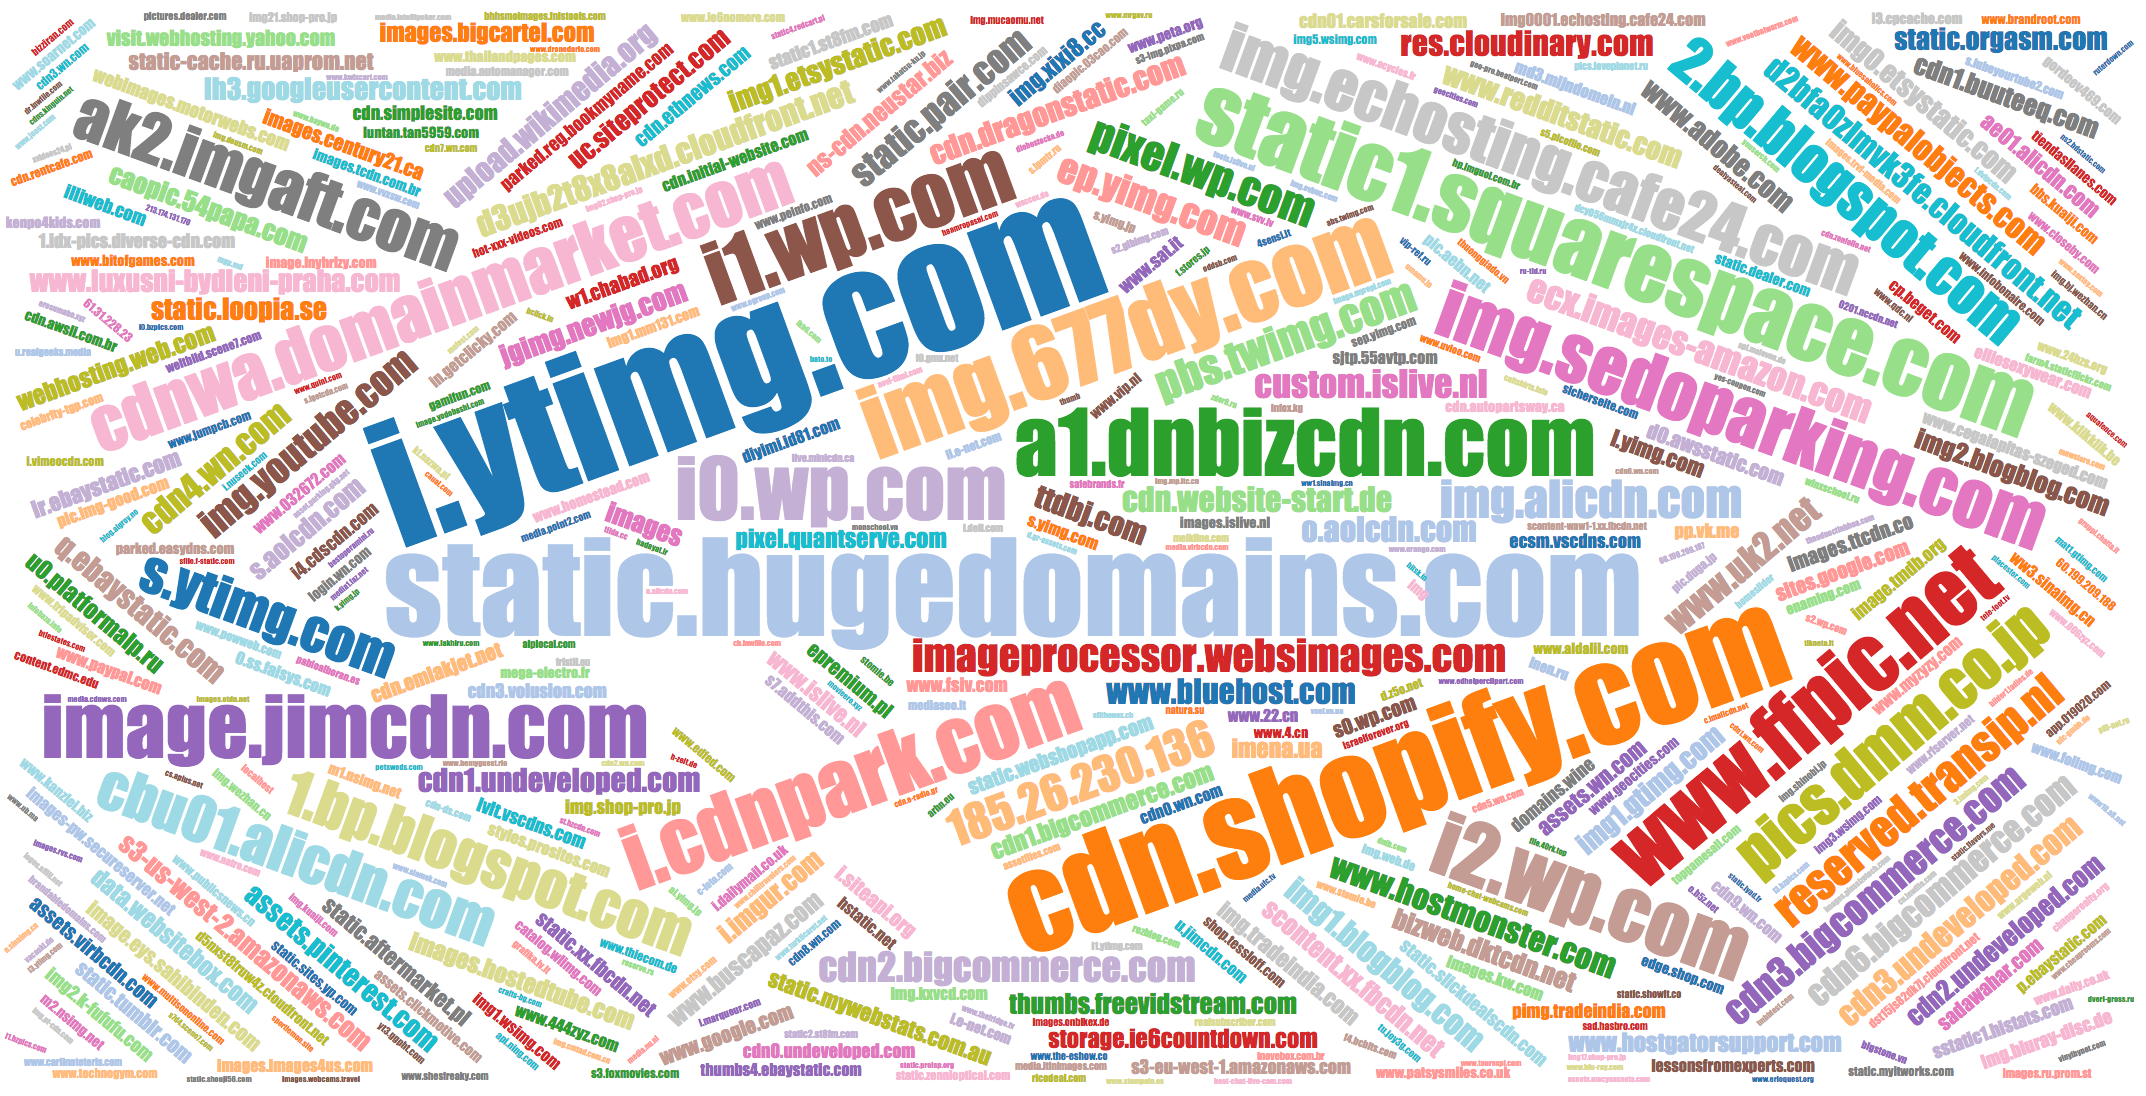 Popular names of IMG domains o.aolcdn.com, ohshitzy77qt.lxydesign.com, etc.